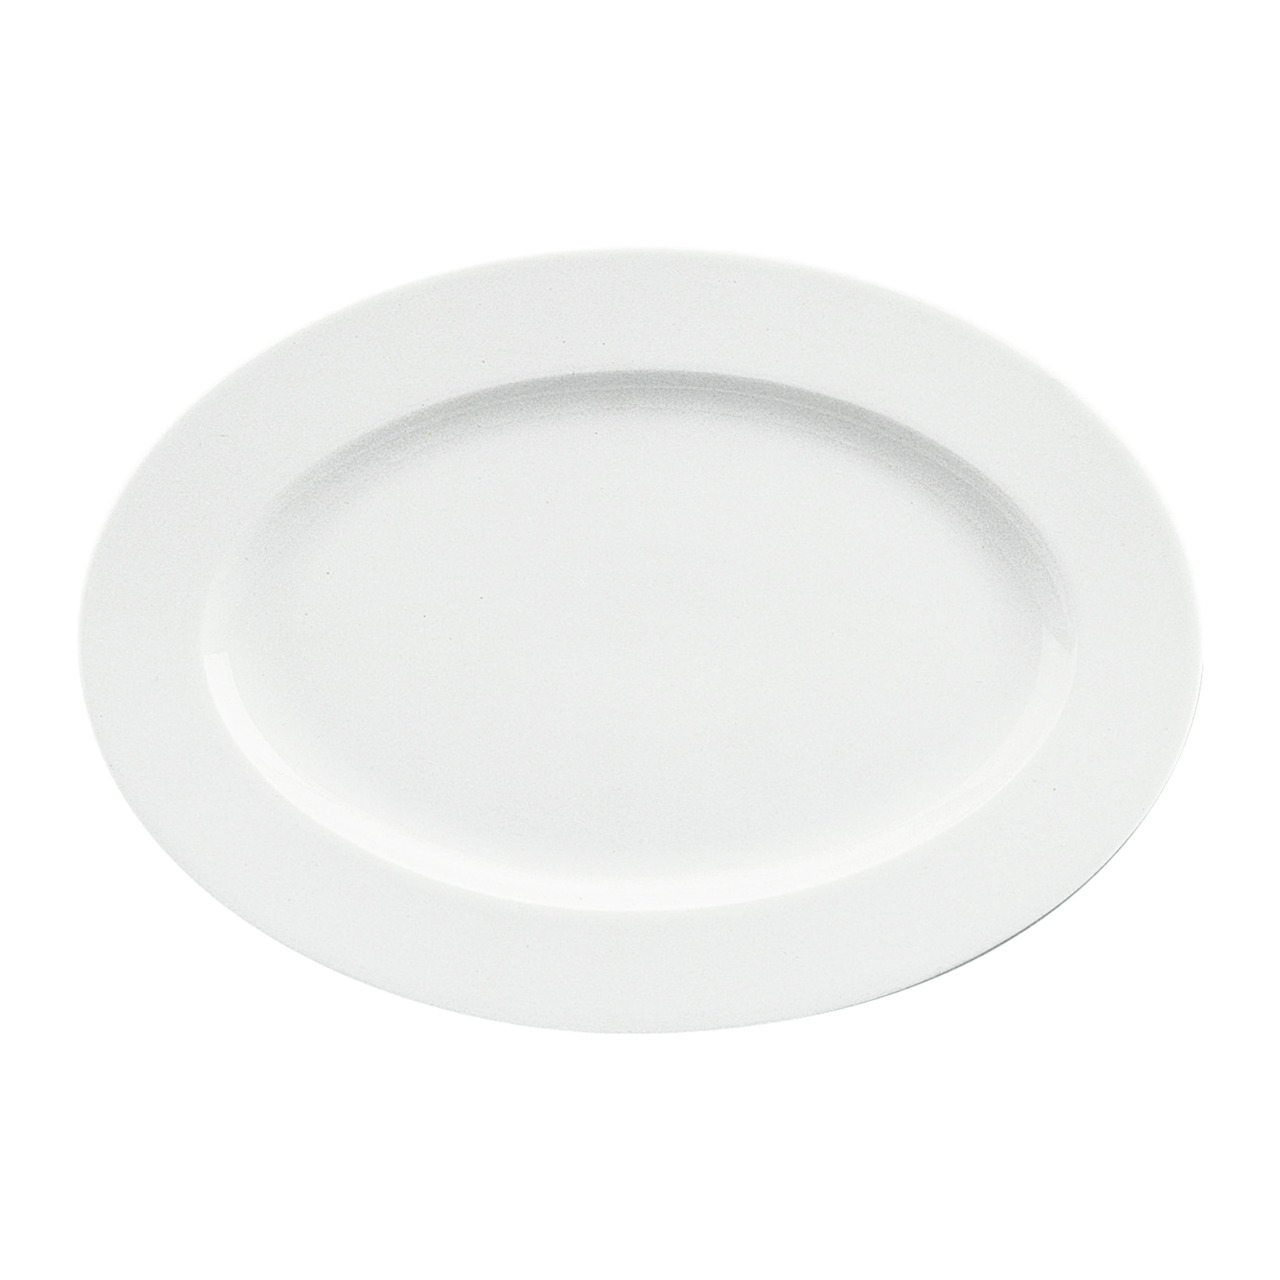 Fine Dining, Platte mit Fahne 328 x 230 mm